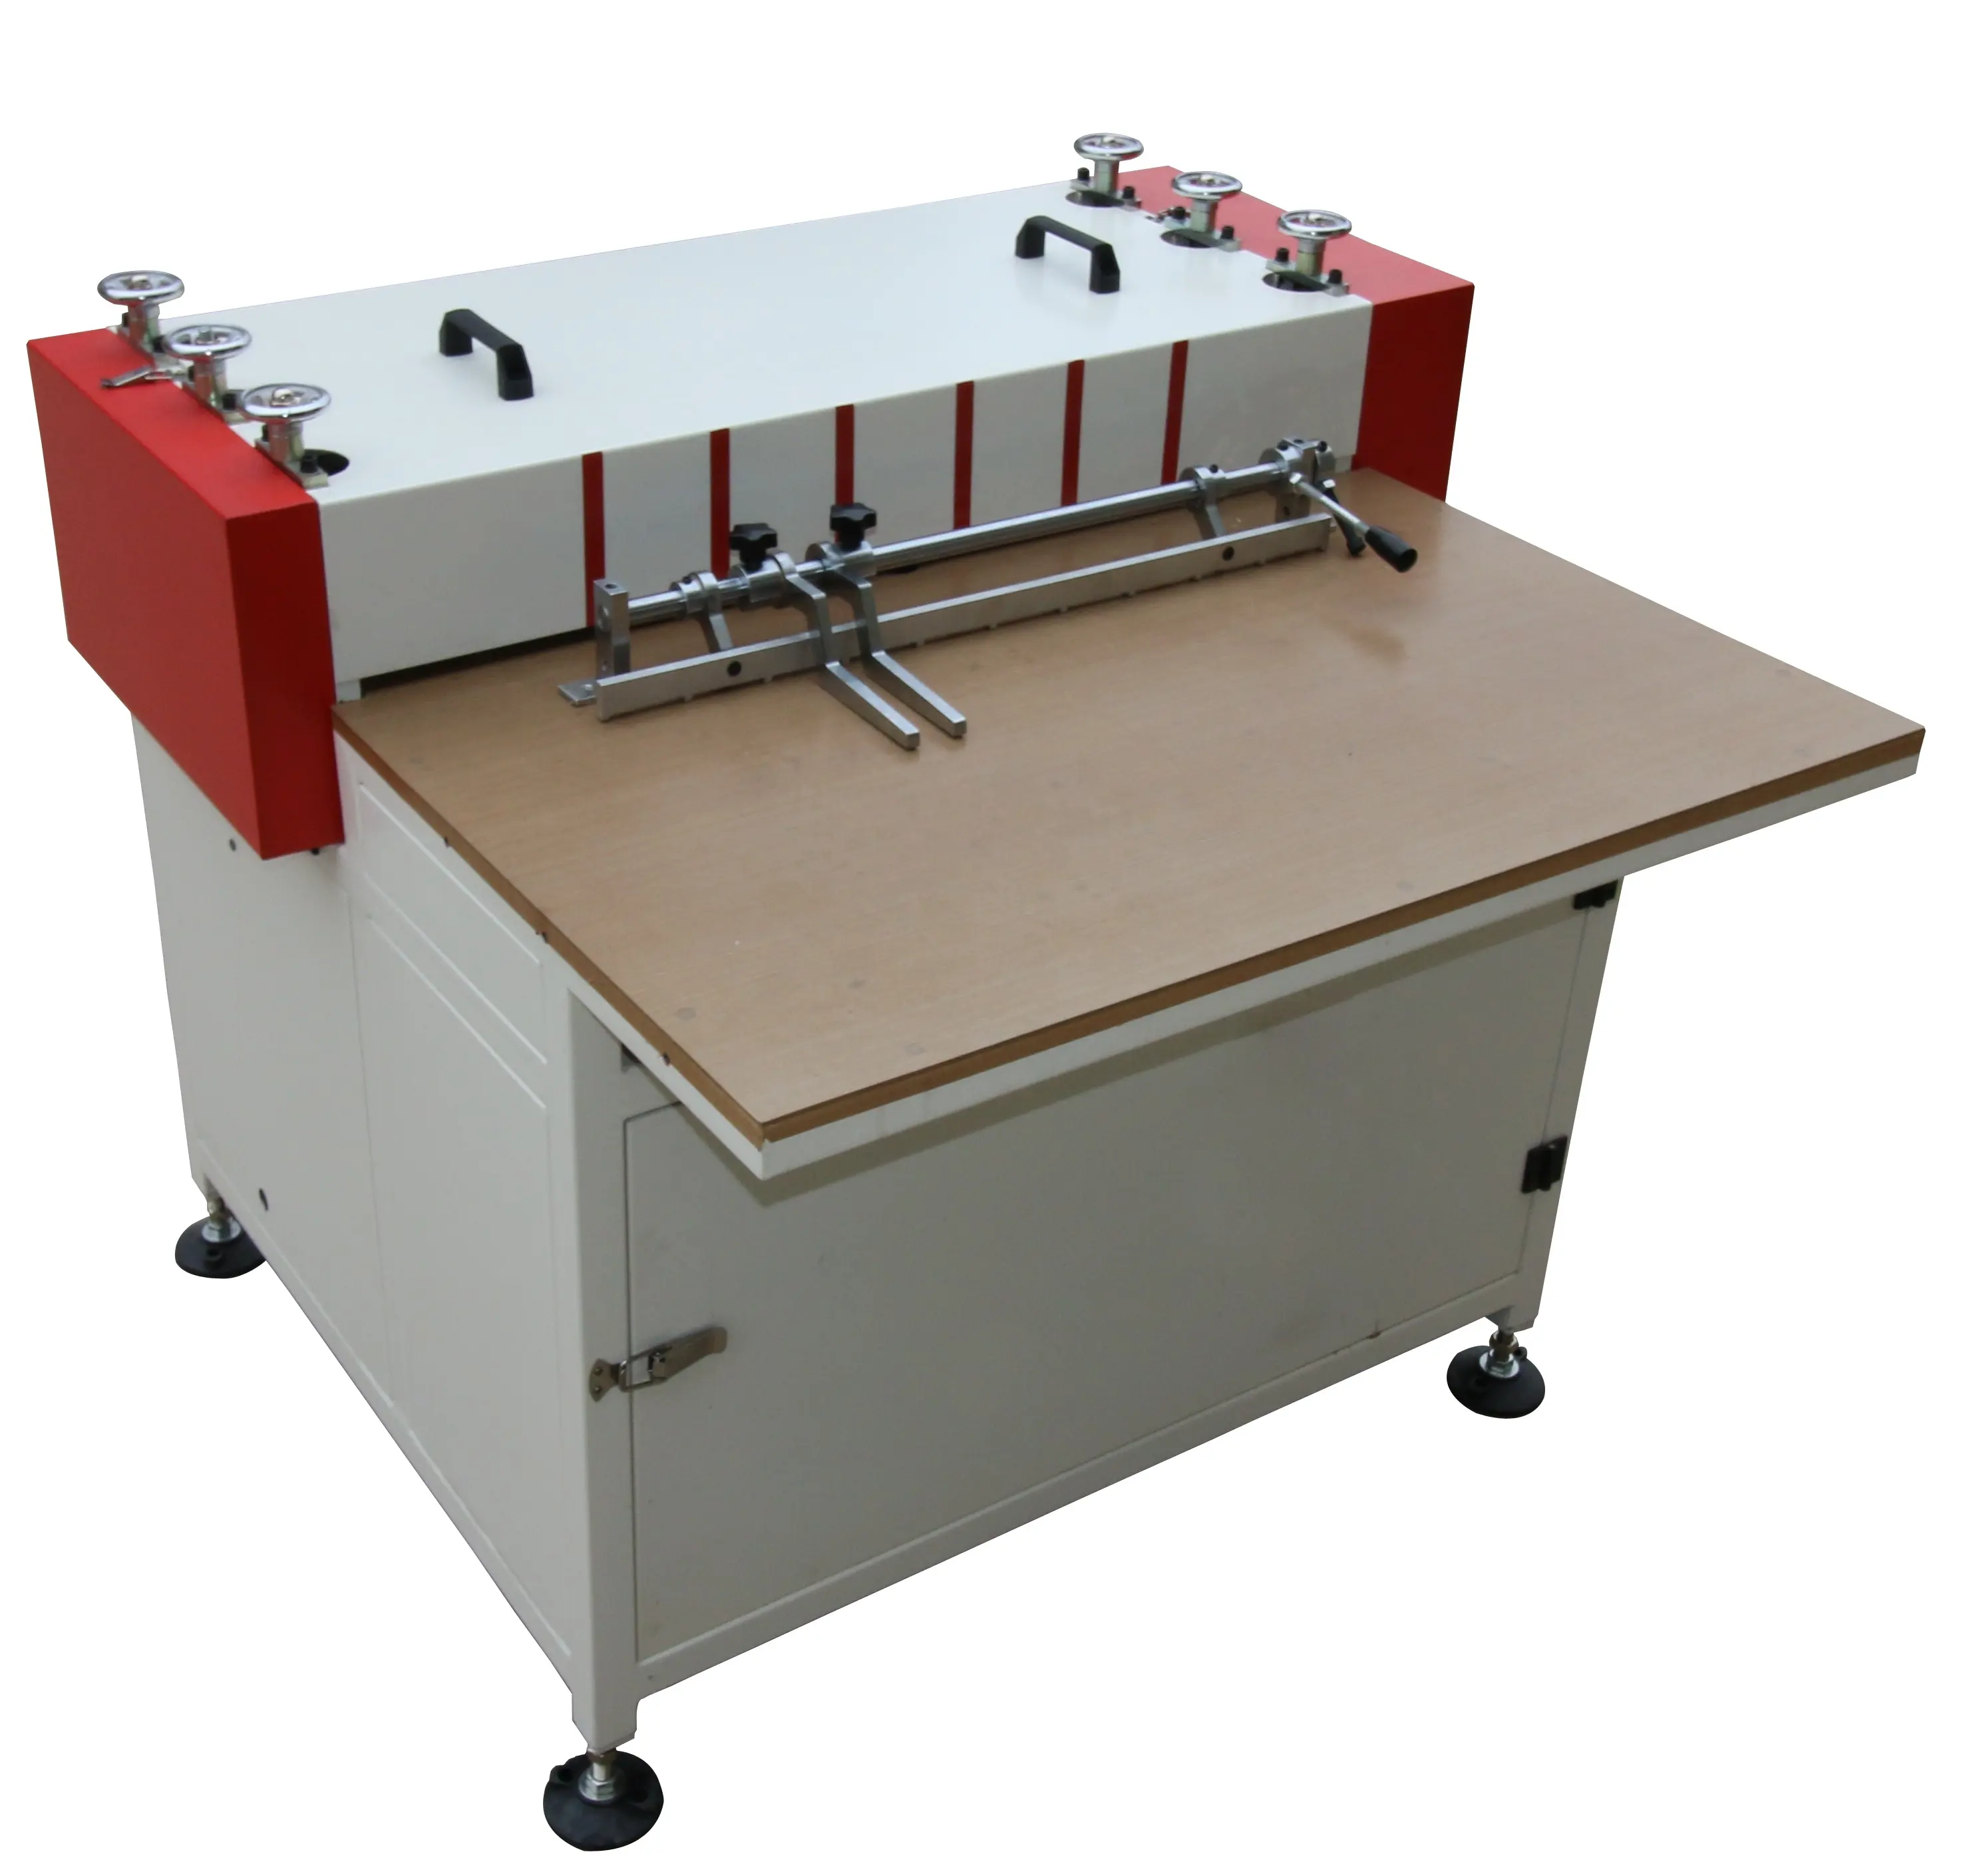 PKE-800 Innovo Manual book case making machine/hardcover making machine/calendar making machine